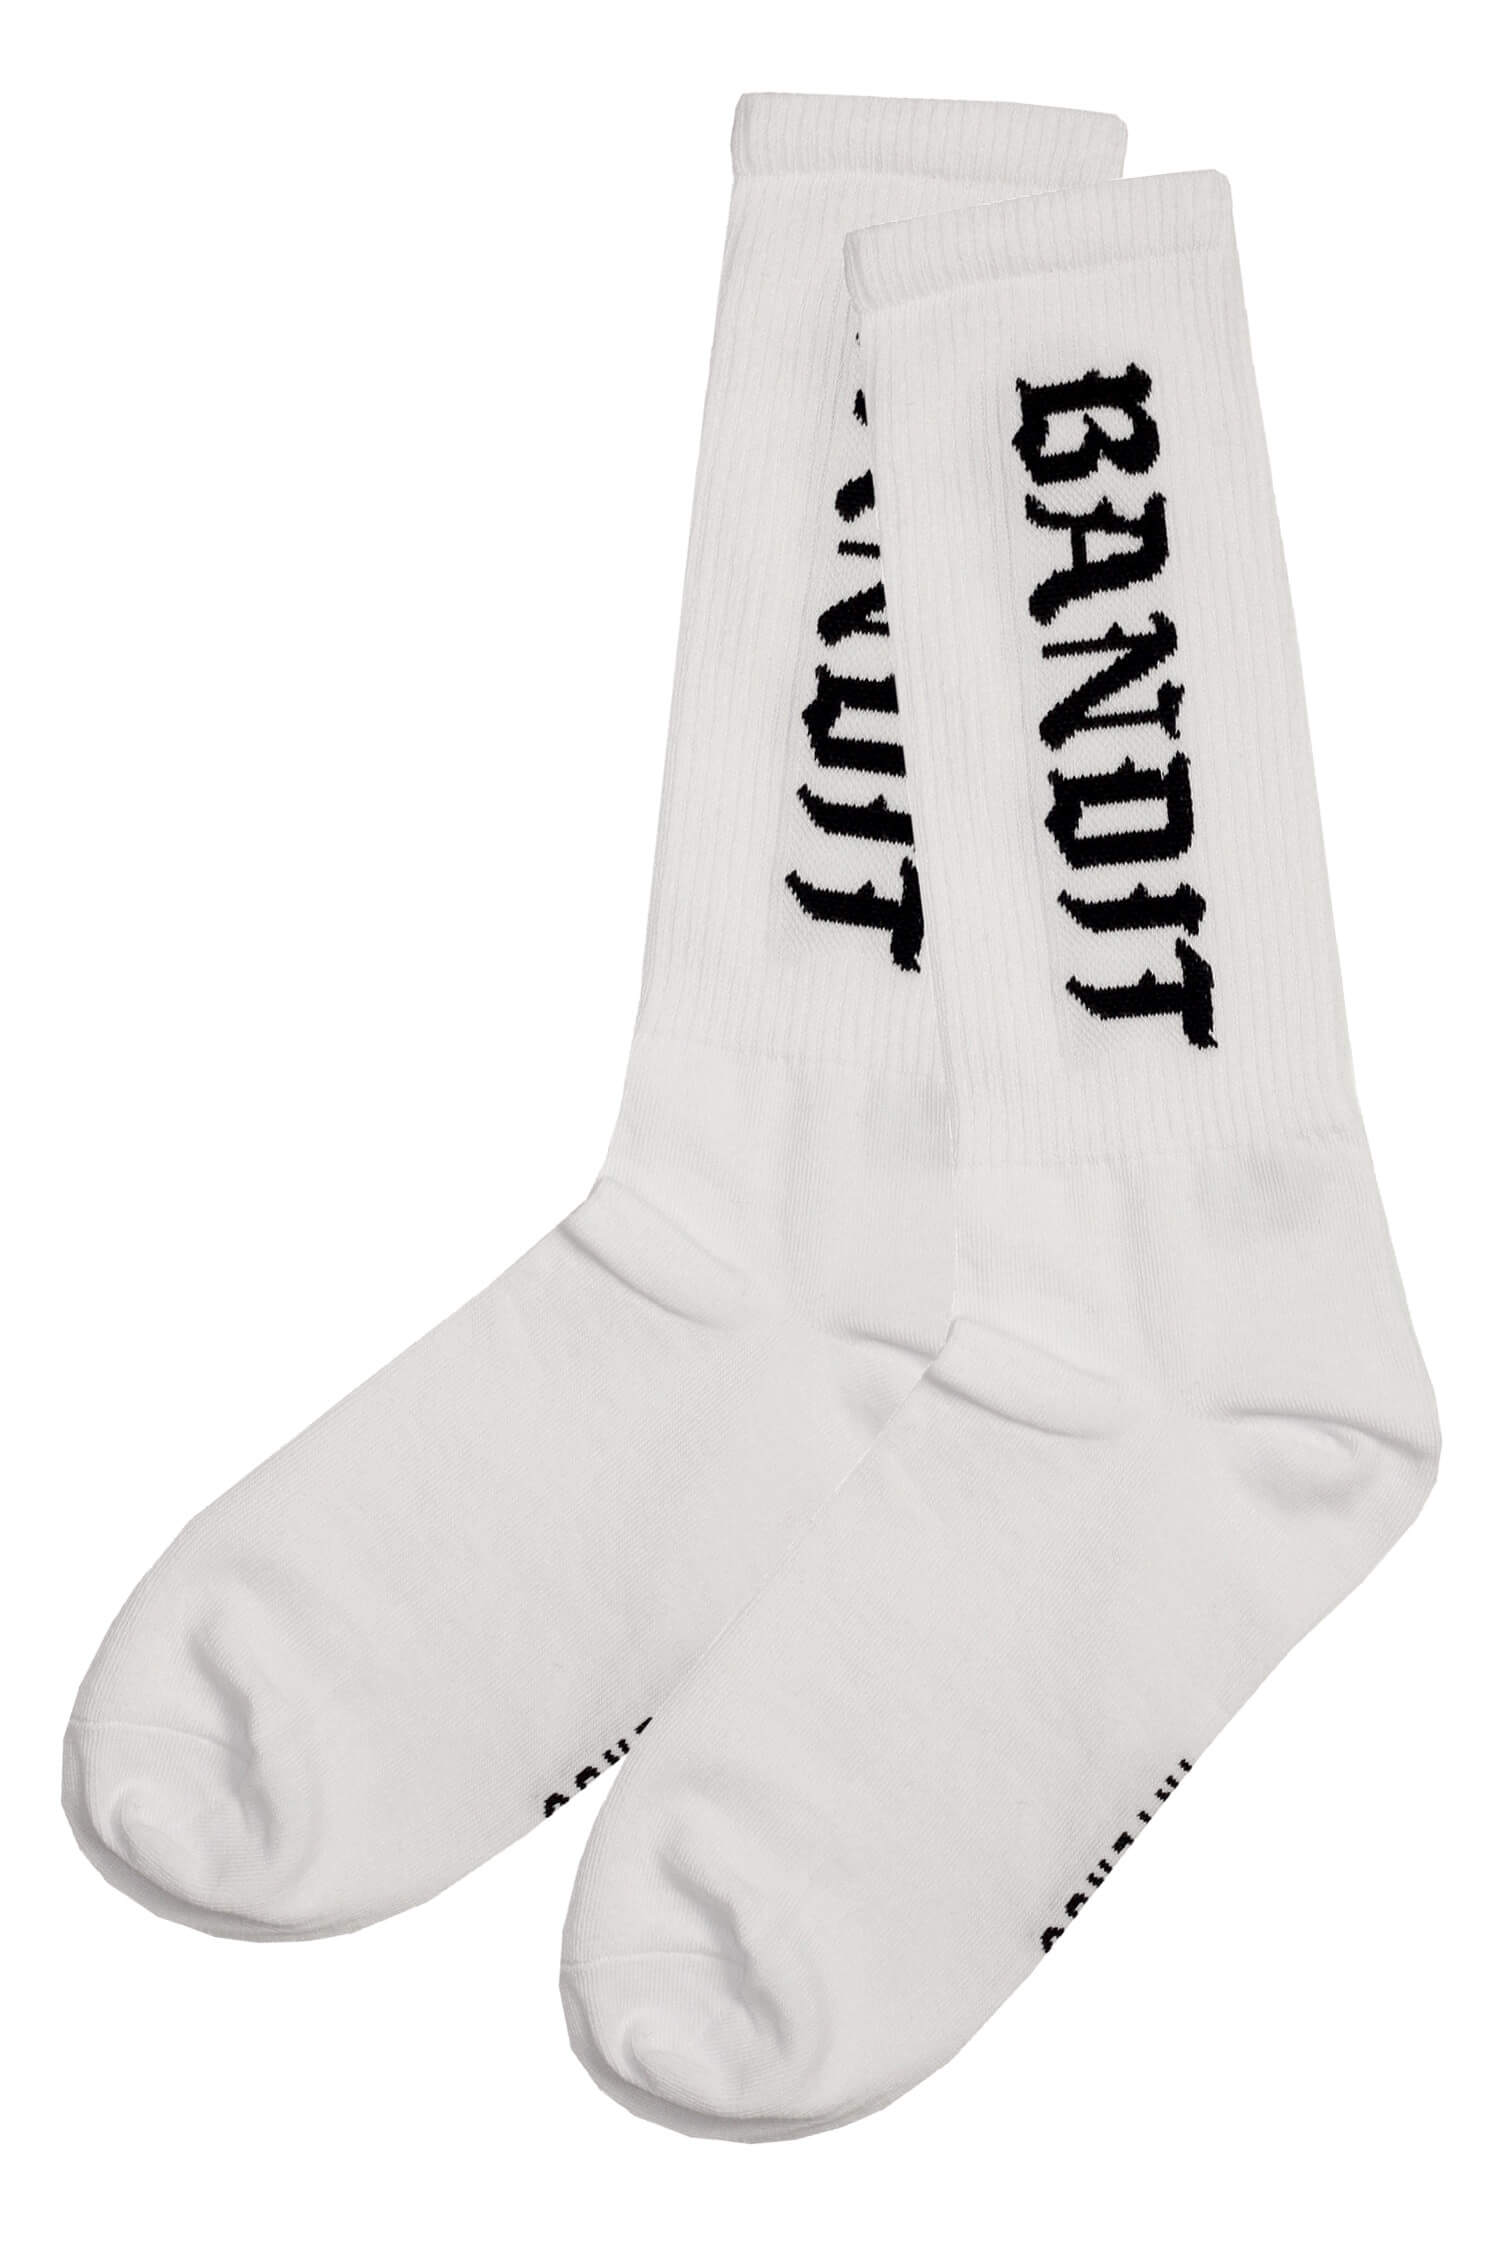 Bandit Intenso vysoké pánské ponožky bavlna 36-40 bílá